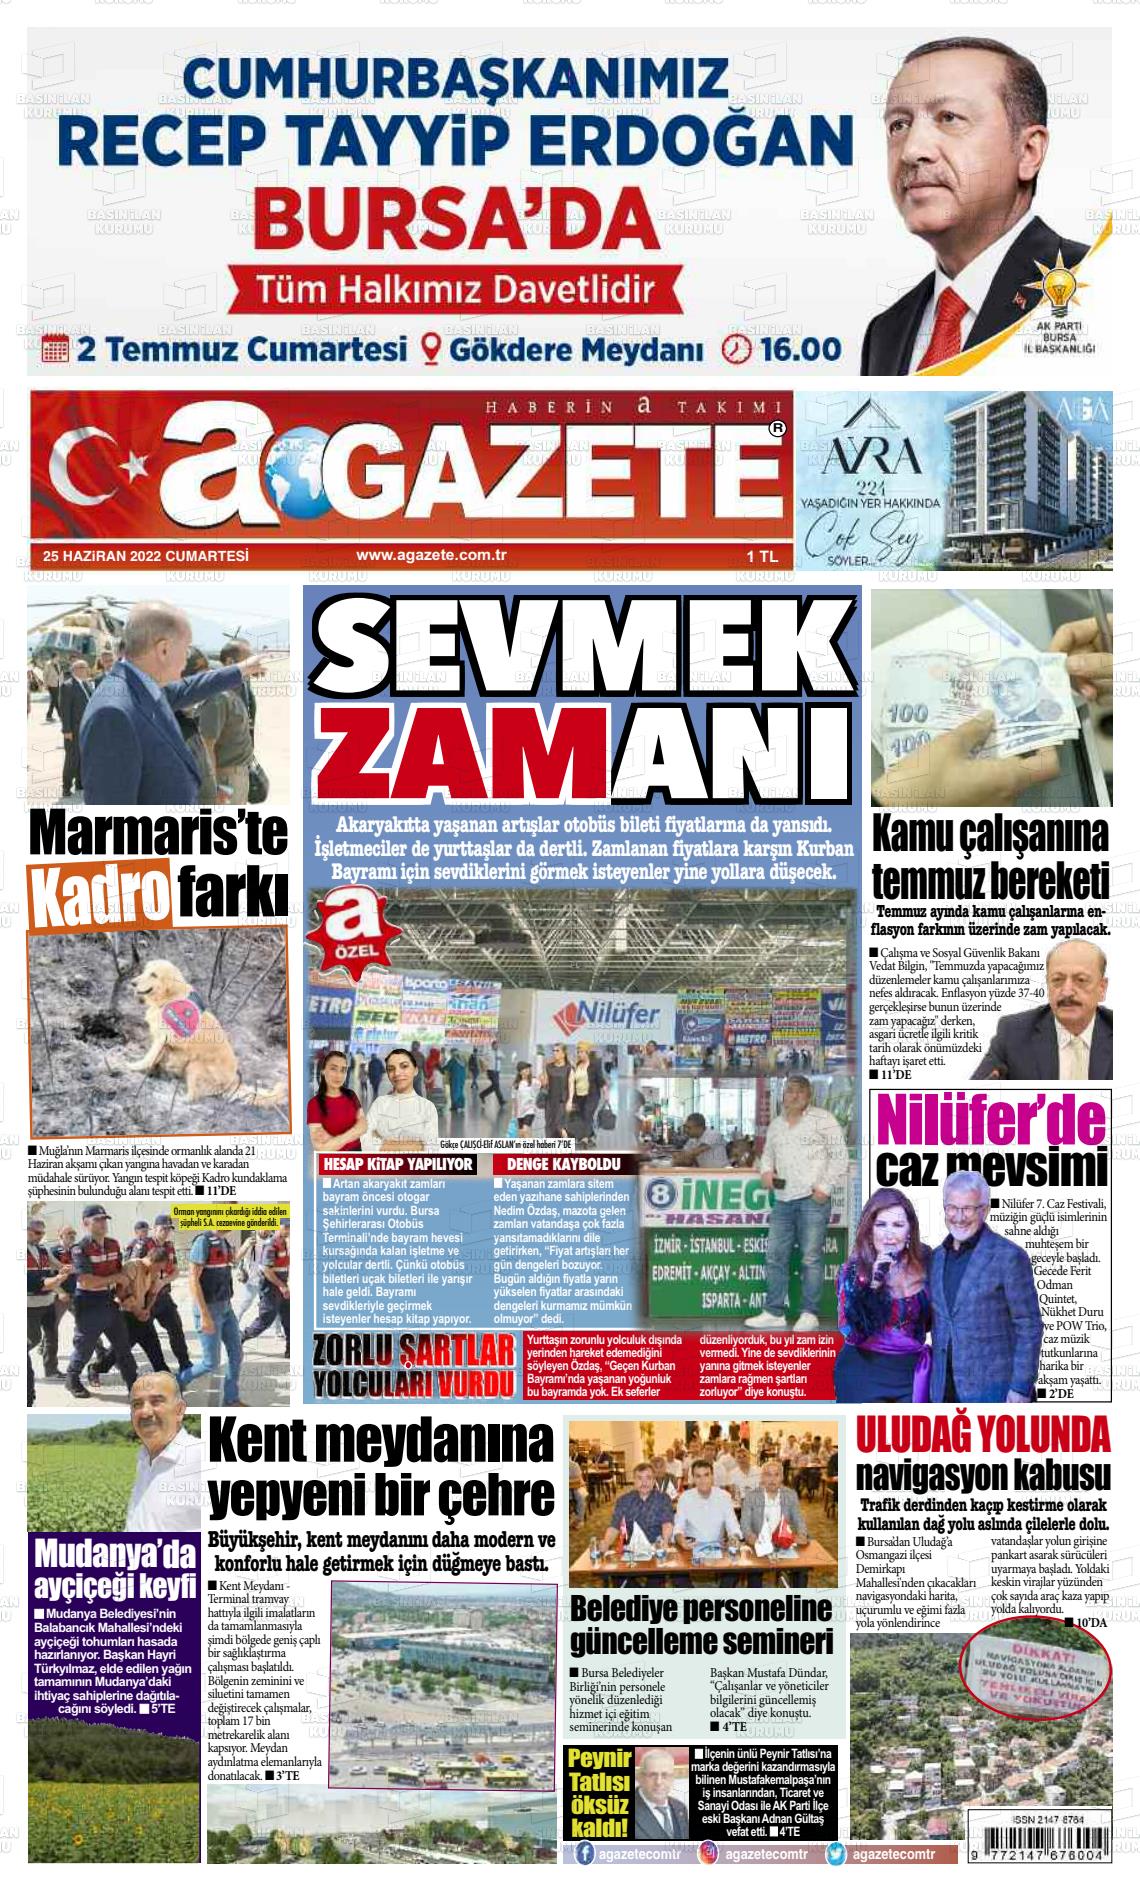 25 Haziran 2022 a gazete Gazete Manşeti